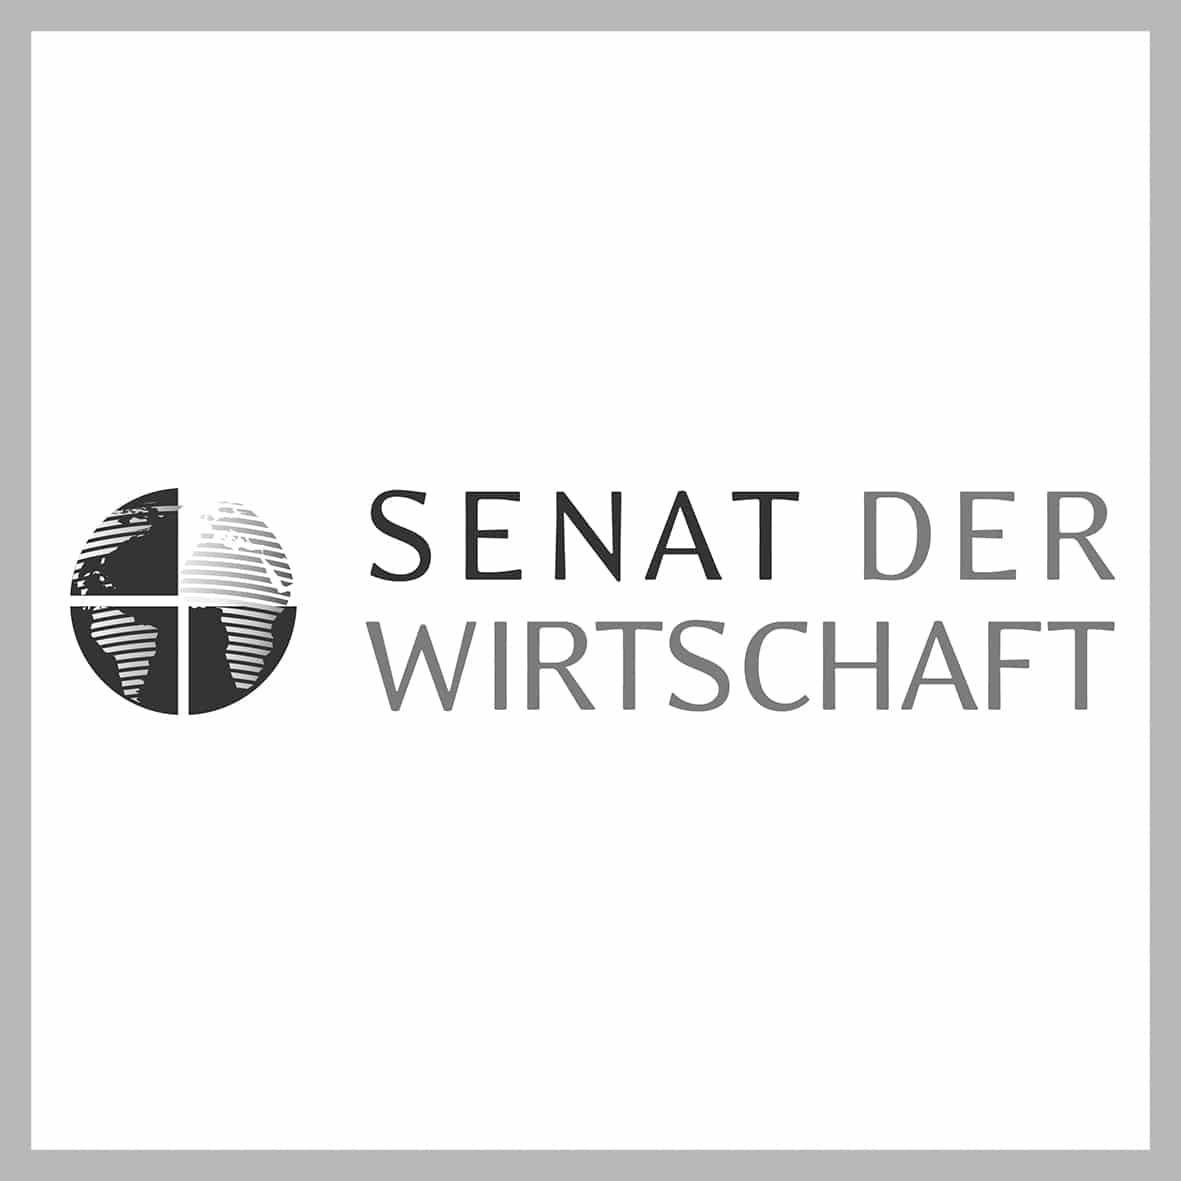 Logo vom Senat der Wirtschaft in schwarz/weiß vor dem Schriftzug ist eine Weltkugel abgebildet, durch die sich ein Pluszeichen zieht